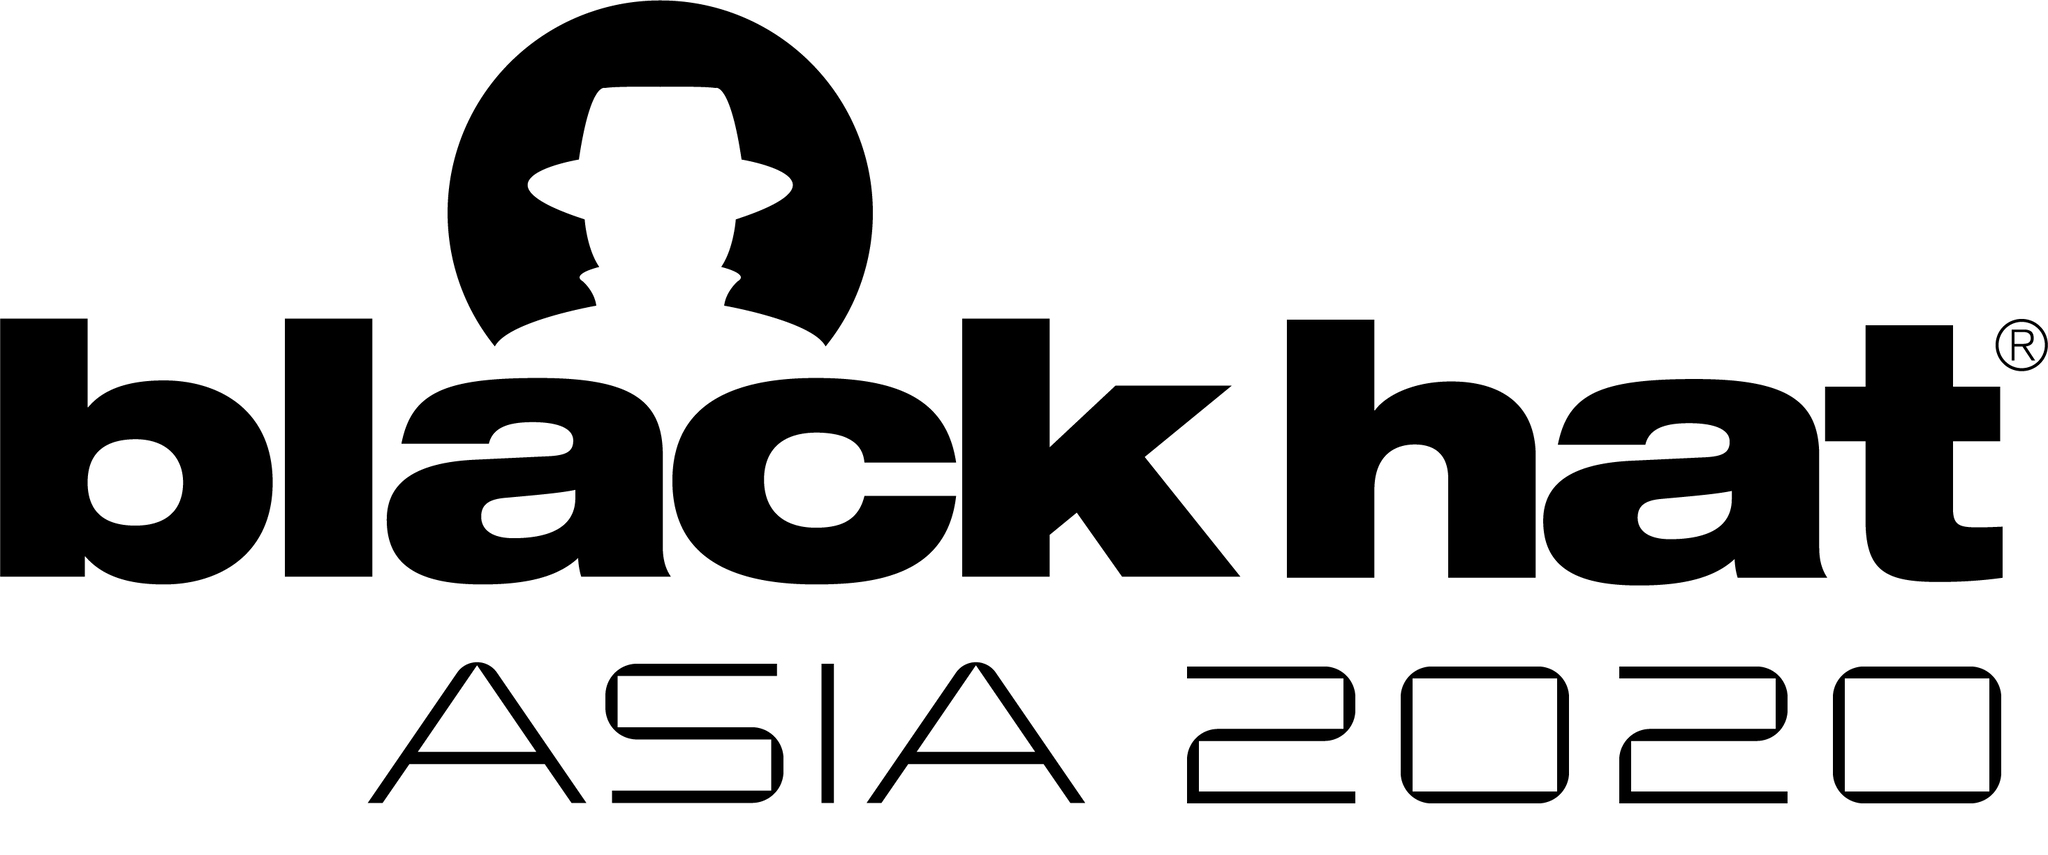 BHA20 Logo.jpg